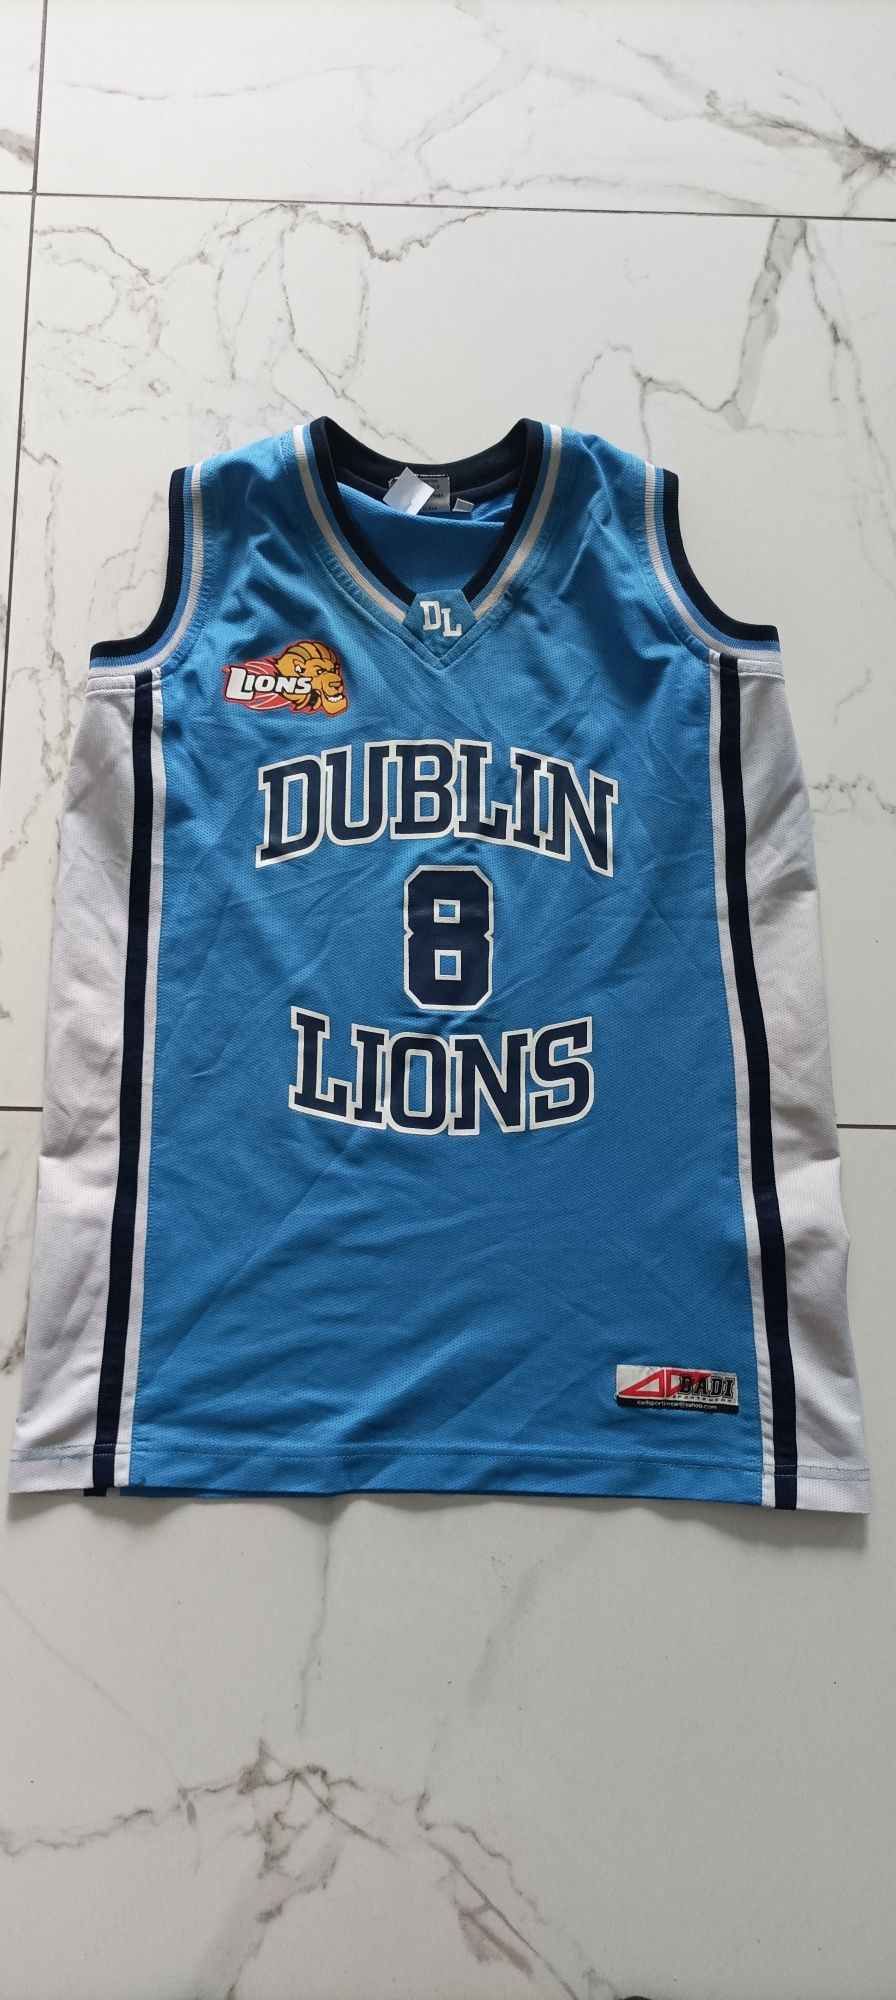 Koszulka koszykarska Dublin Lions M